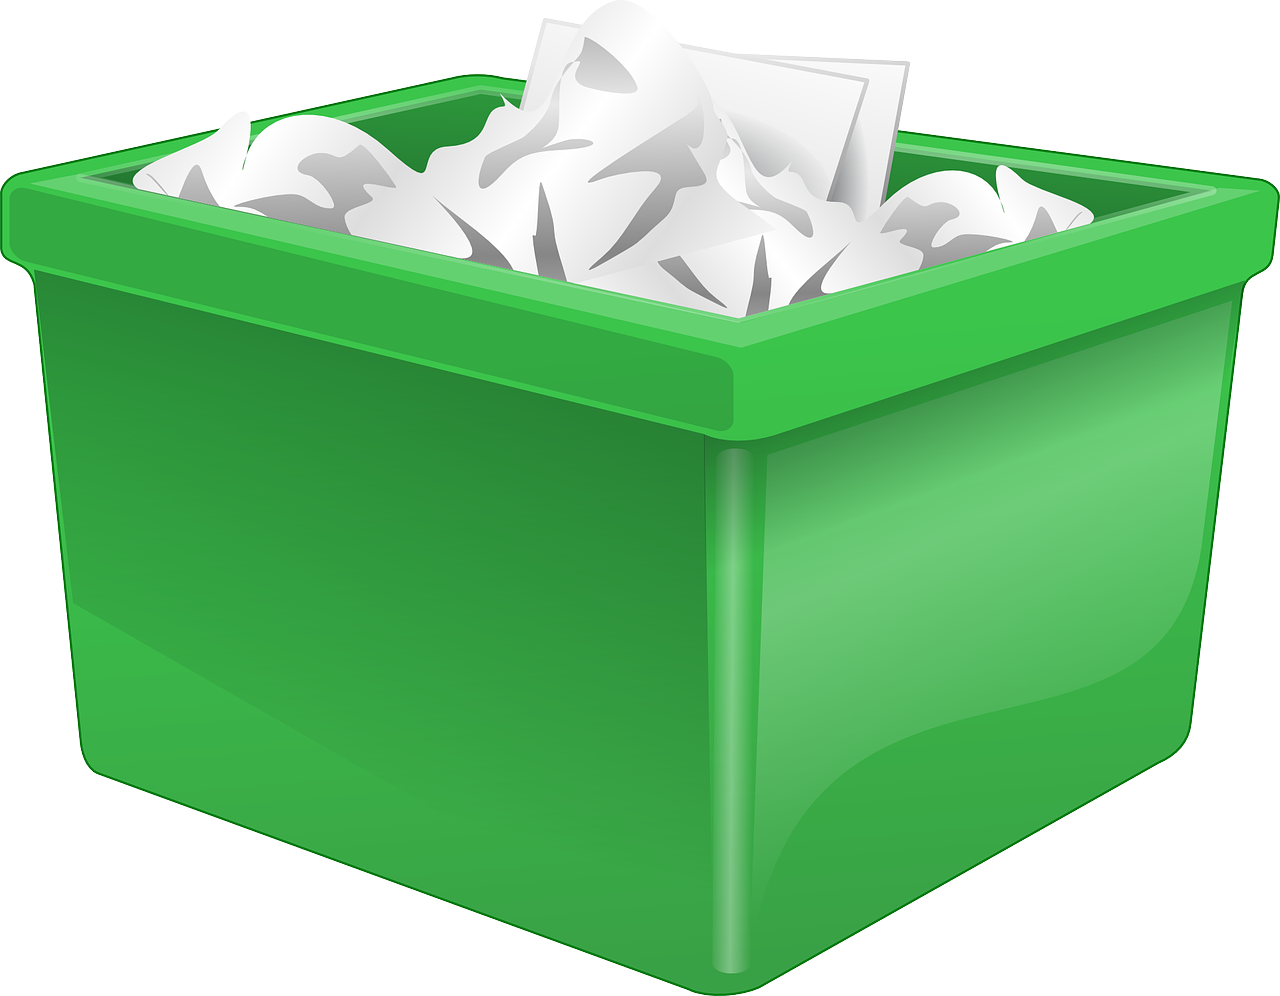 Paper/cardboard garbage goes in green bins. 